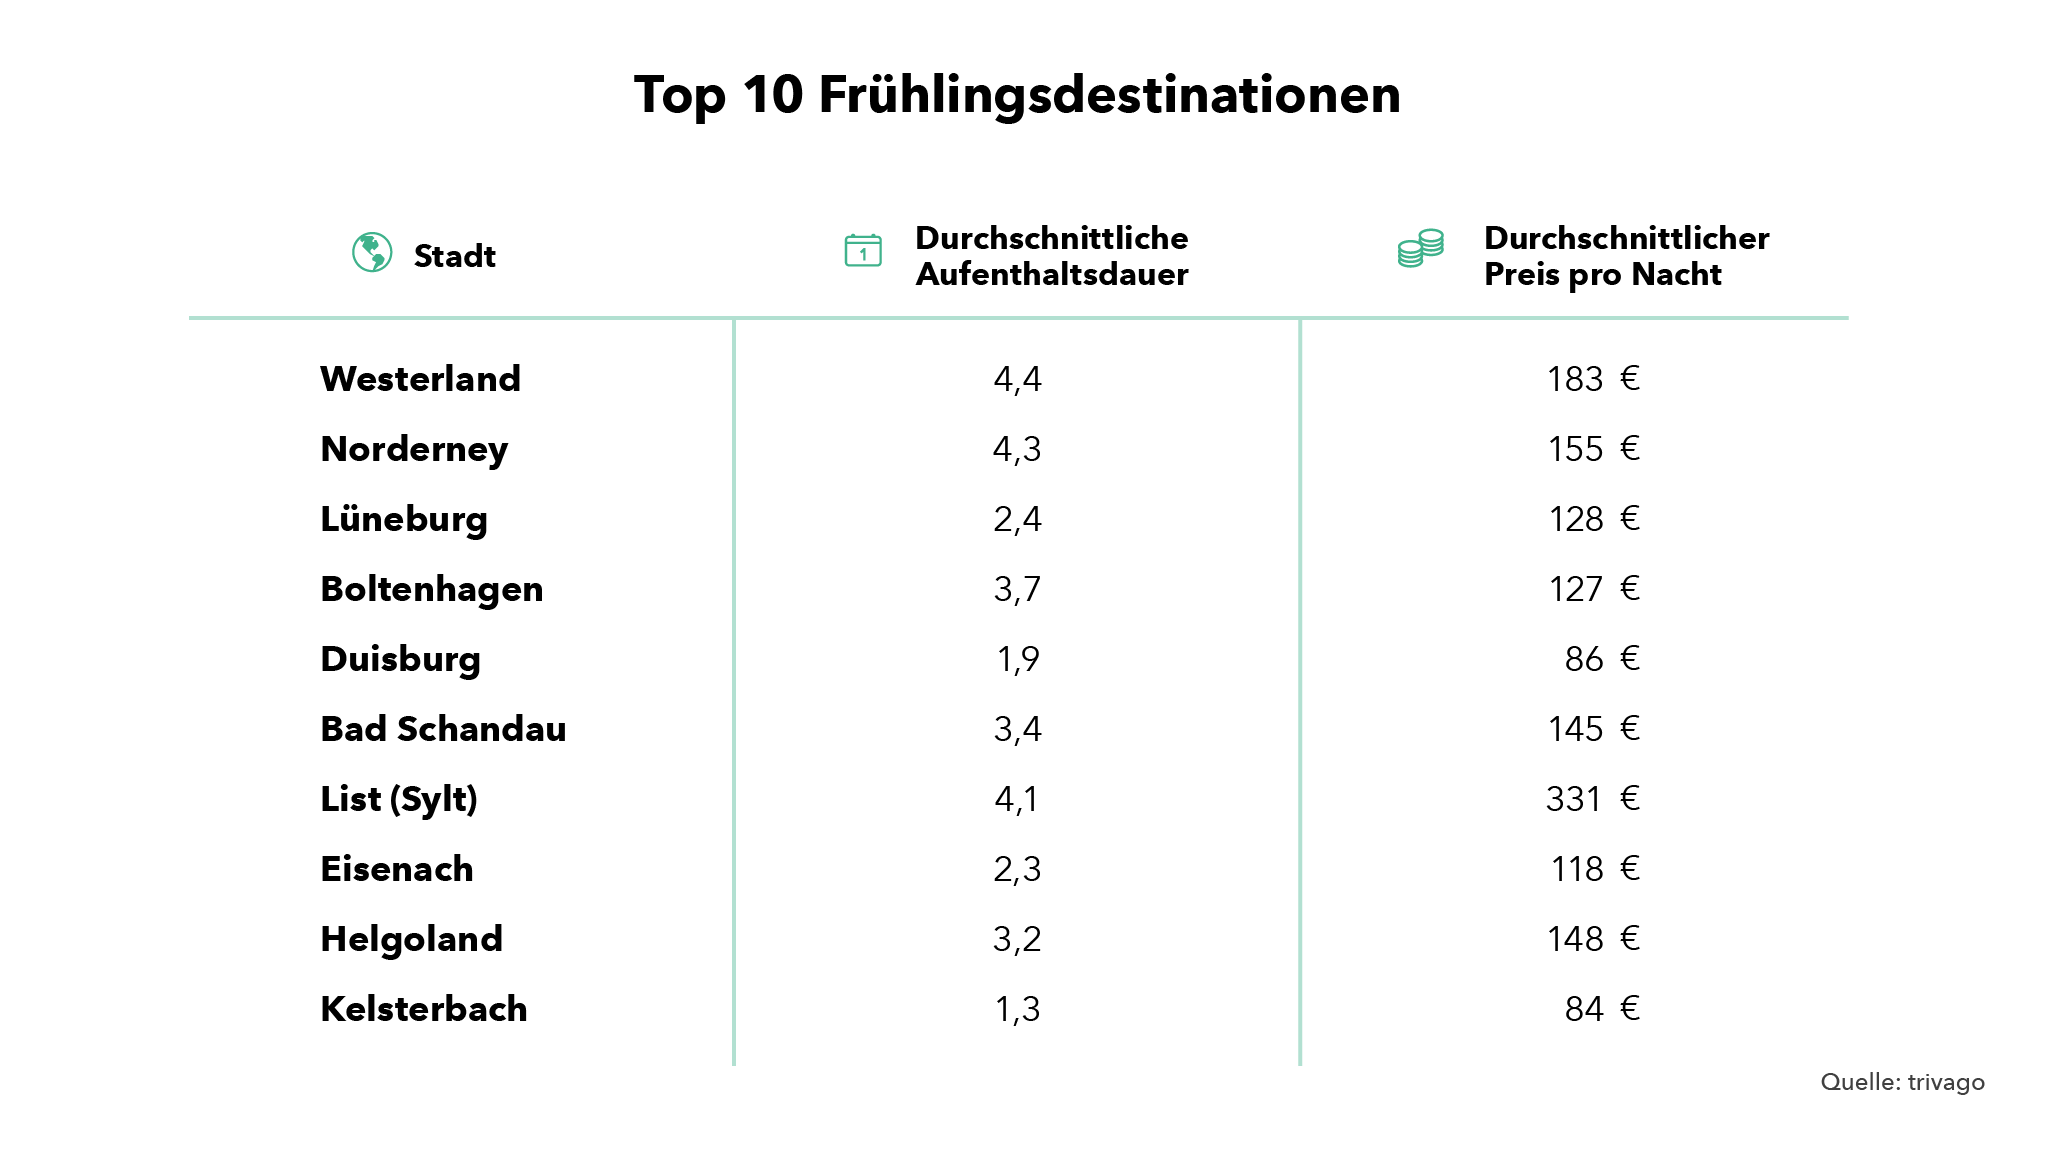 Top 10 Frühlingsdestinationen 2018 Deutschland 